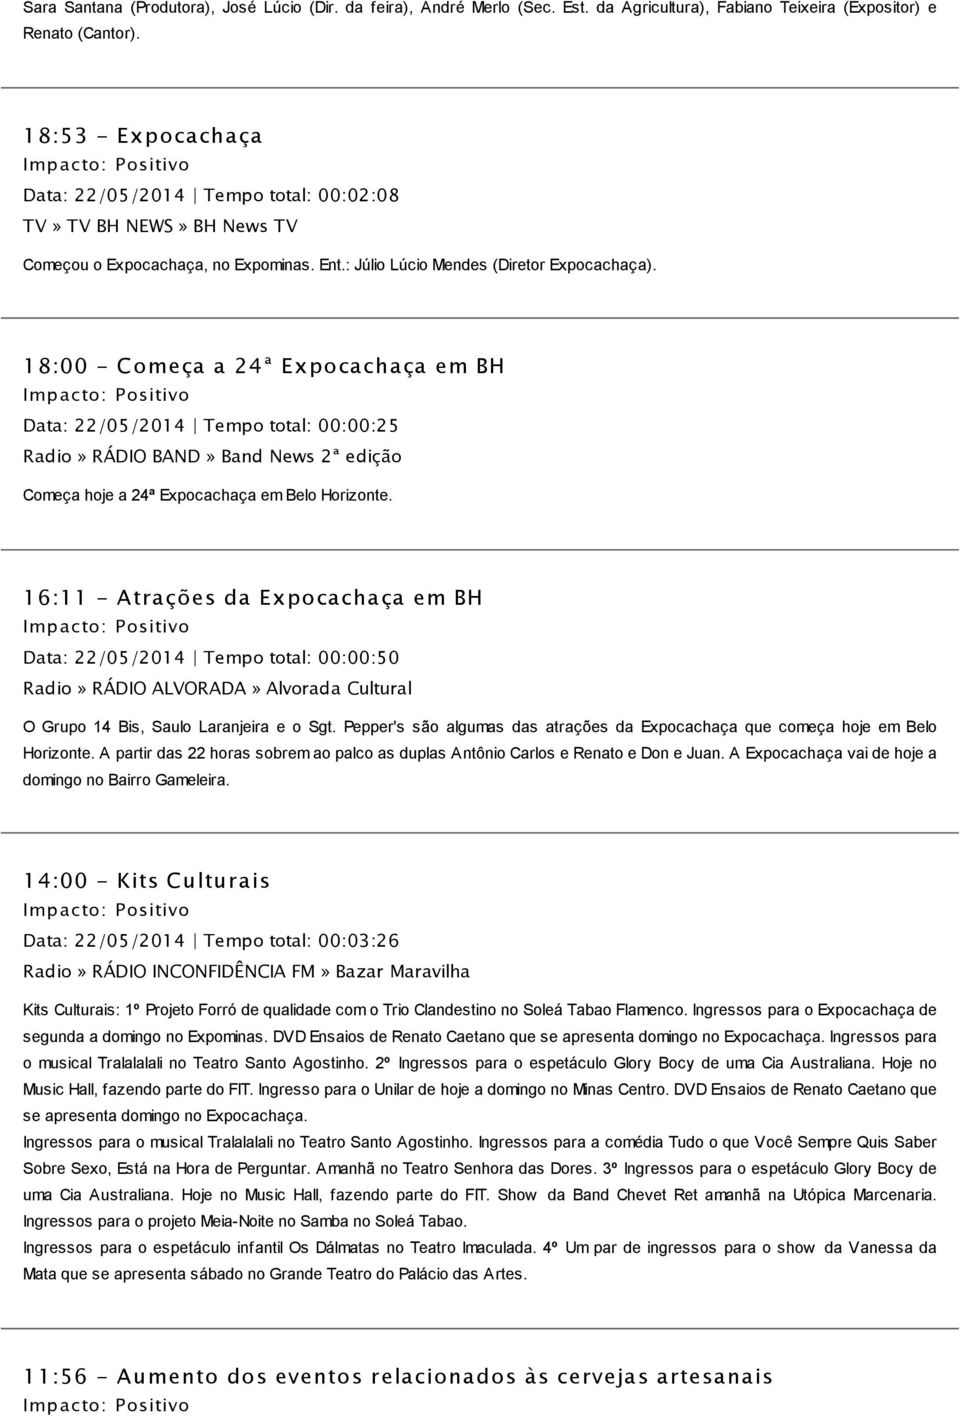 18:00 - Começa a 24ª Expocachaça em BH Data: 22/05/2014 Tempo total: 00:00:25 Radio» RÁDIO BAND» Band News 2ª edição Começa hoje a 24ª Expocachaça em Belo Horizonte.